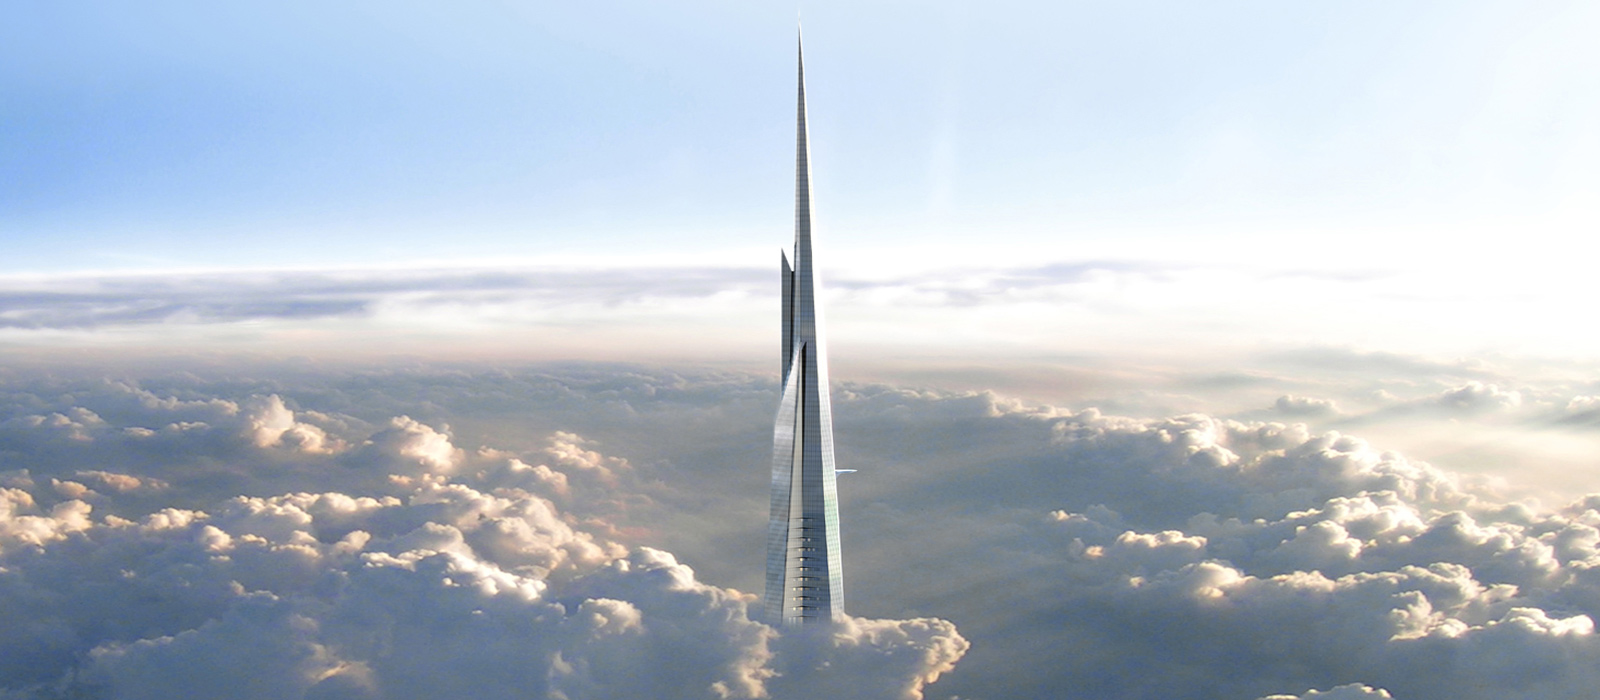 برج جده بلندترین برج در جهان